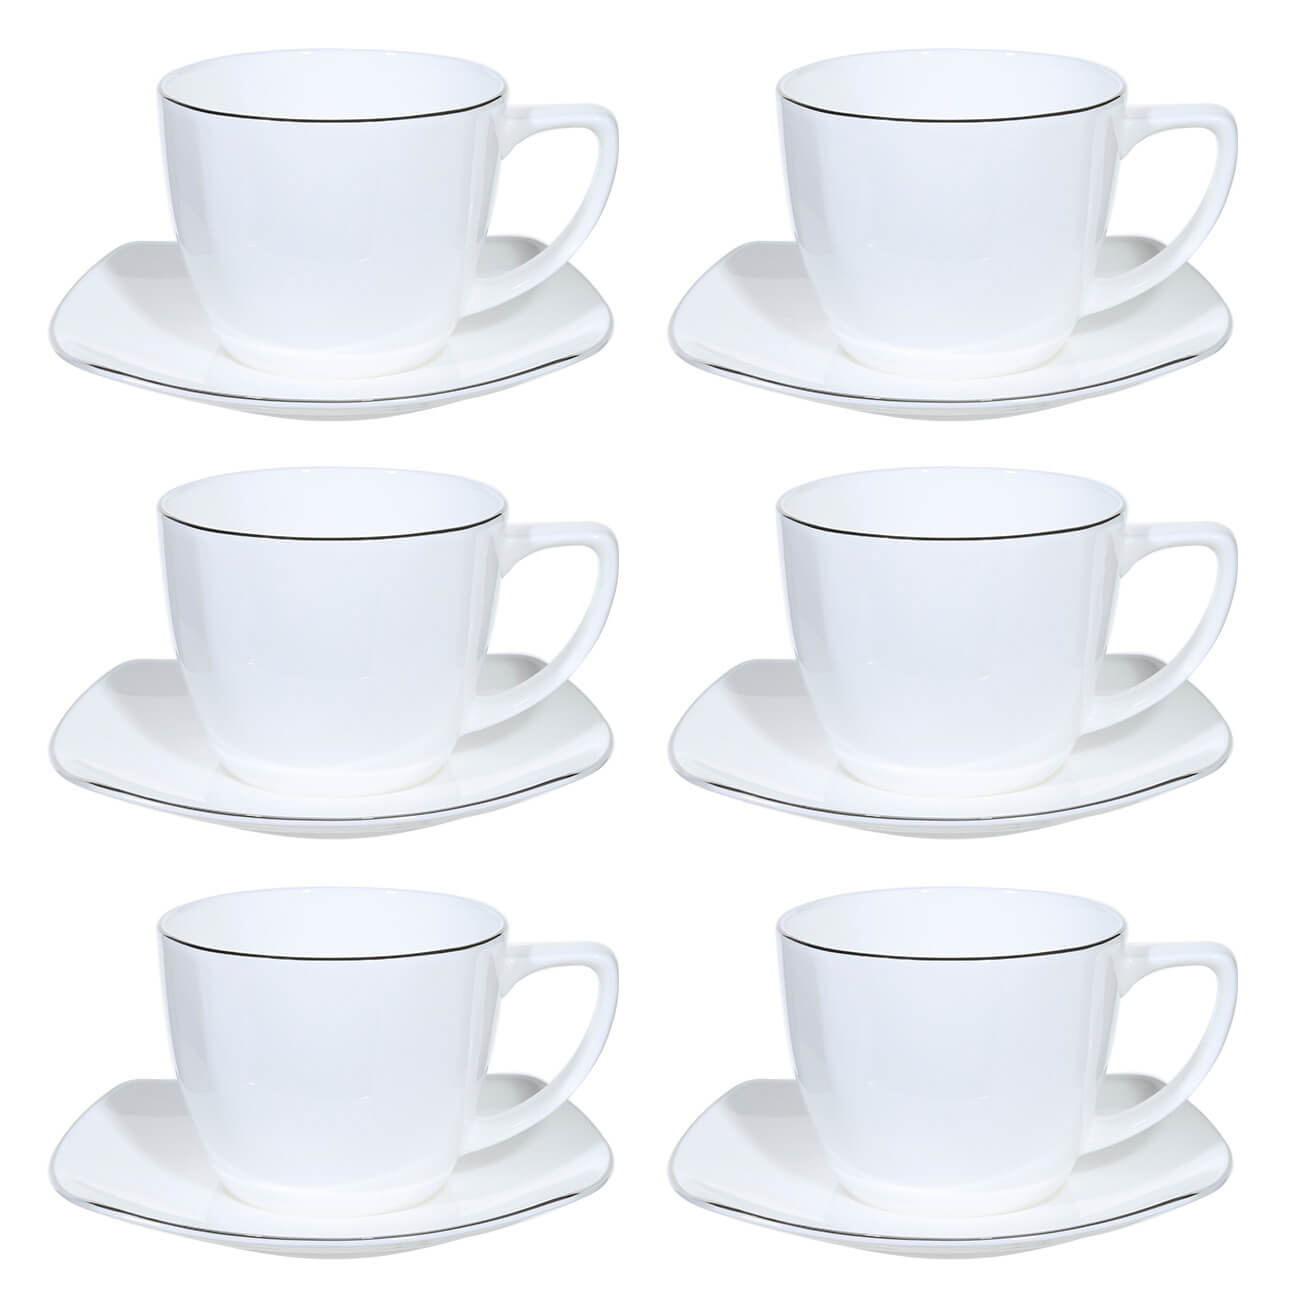 Пара чайная, 6 перс, 12 пр, 240 мл, фарфор F, Iceberg пара кофейная 2 перс 4 пр 90 мл фарфор f antarctica